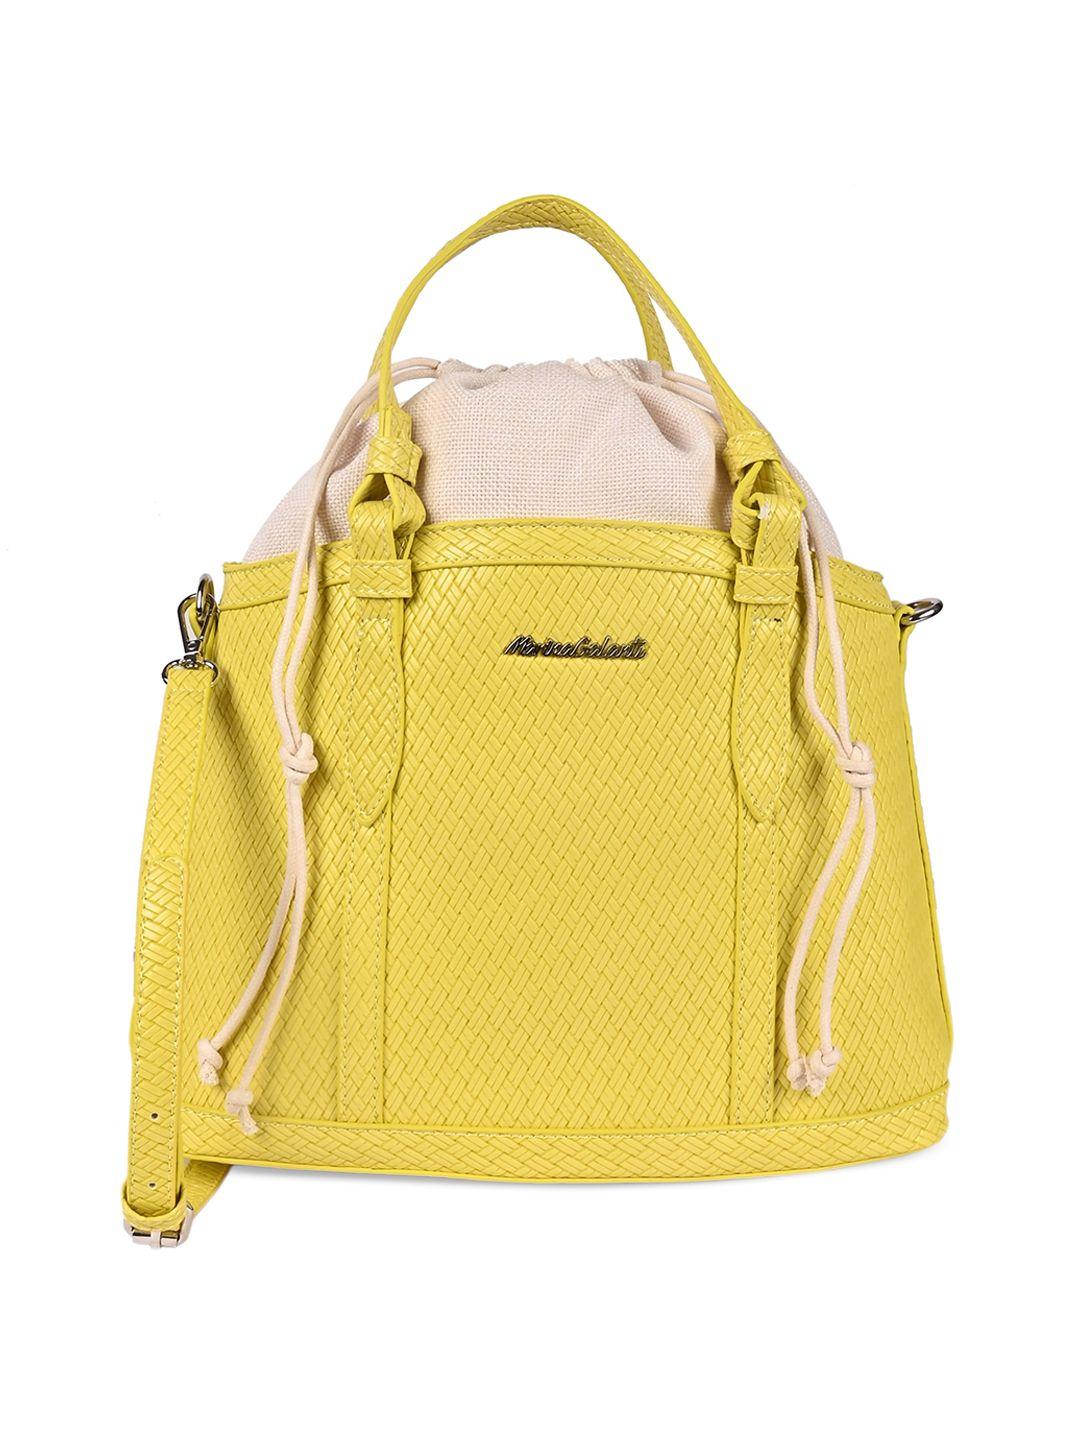 marina galanti yellow pu structured handheld bag